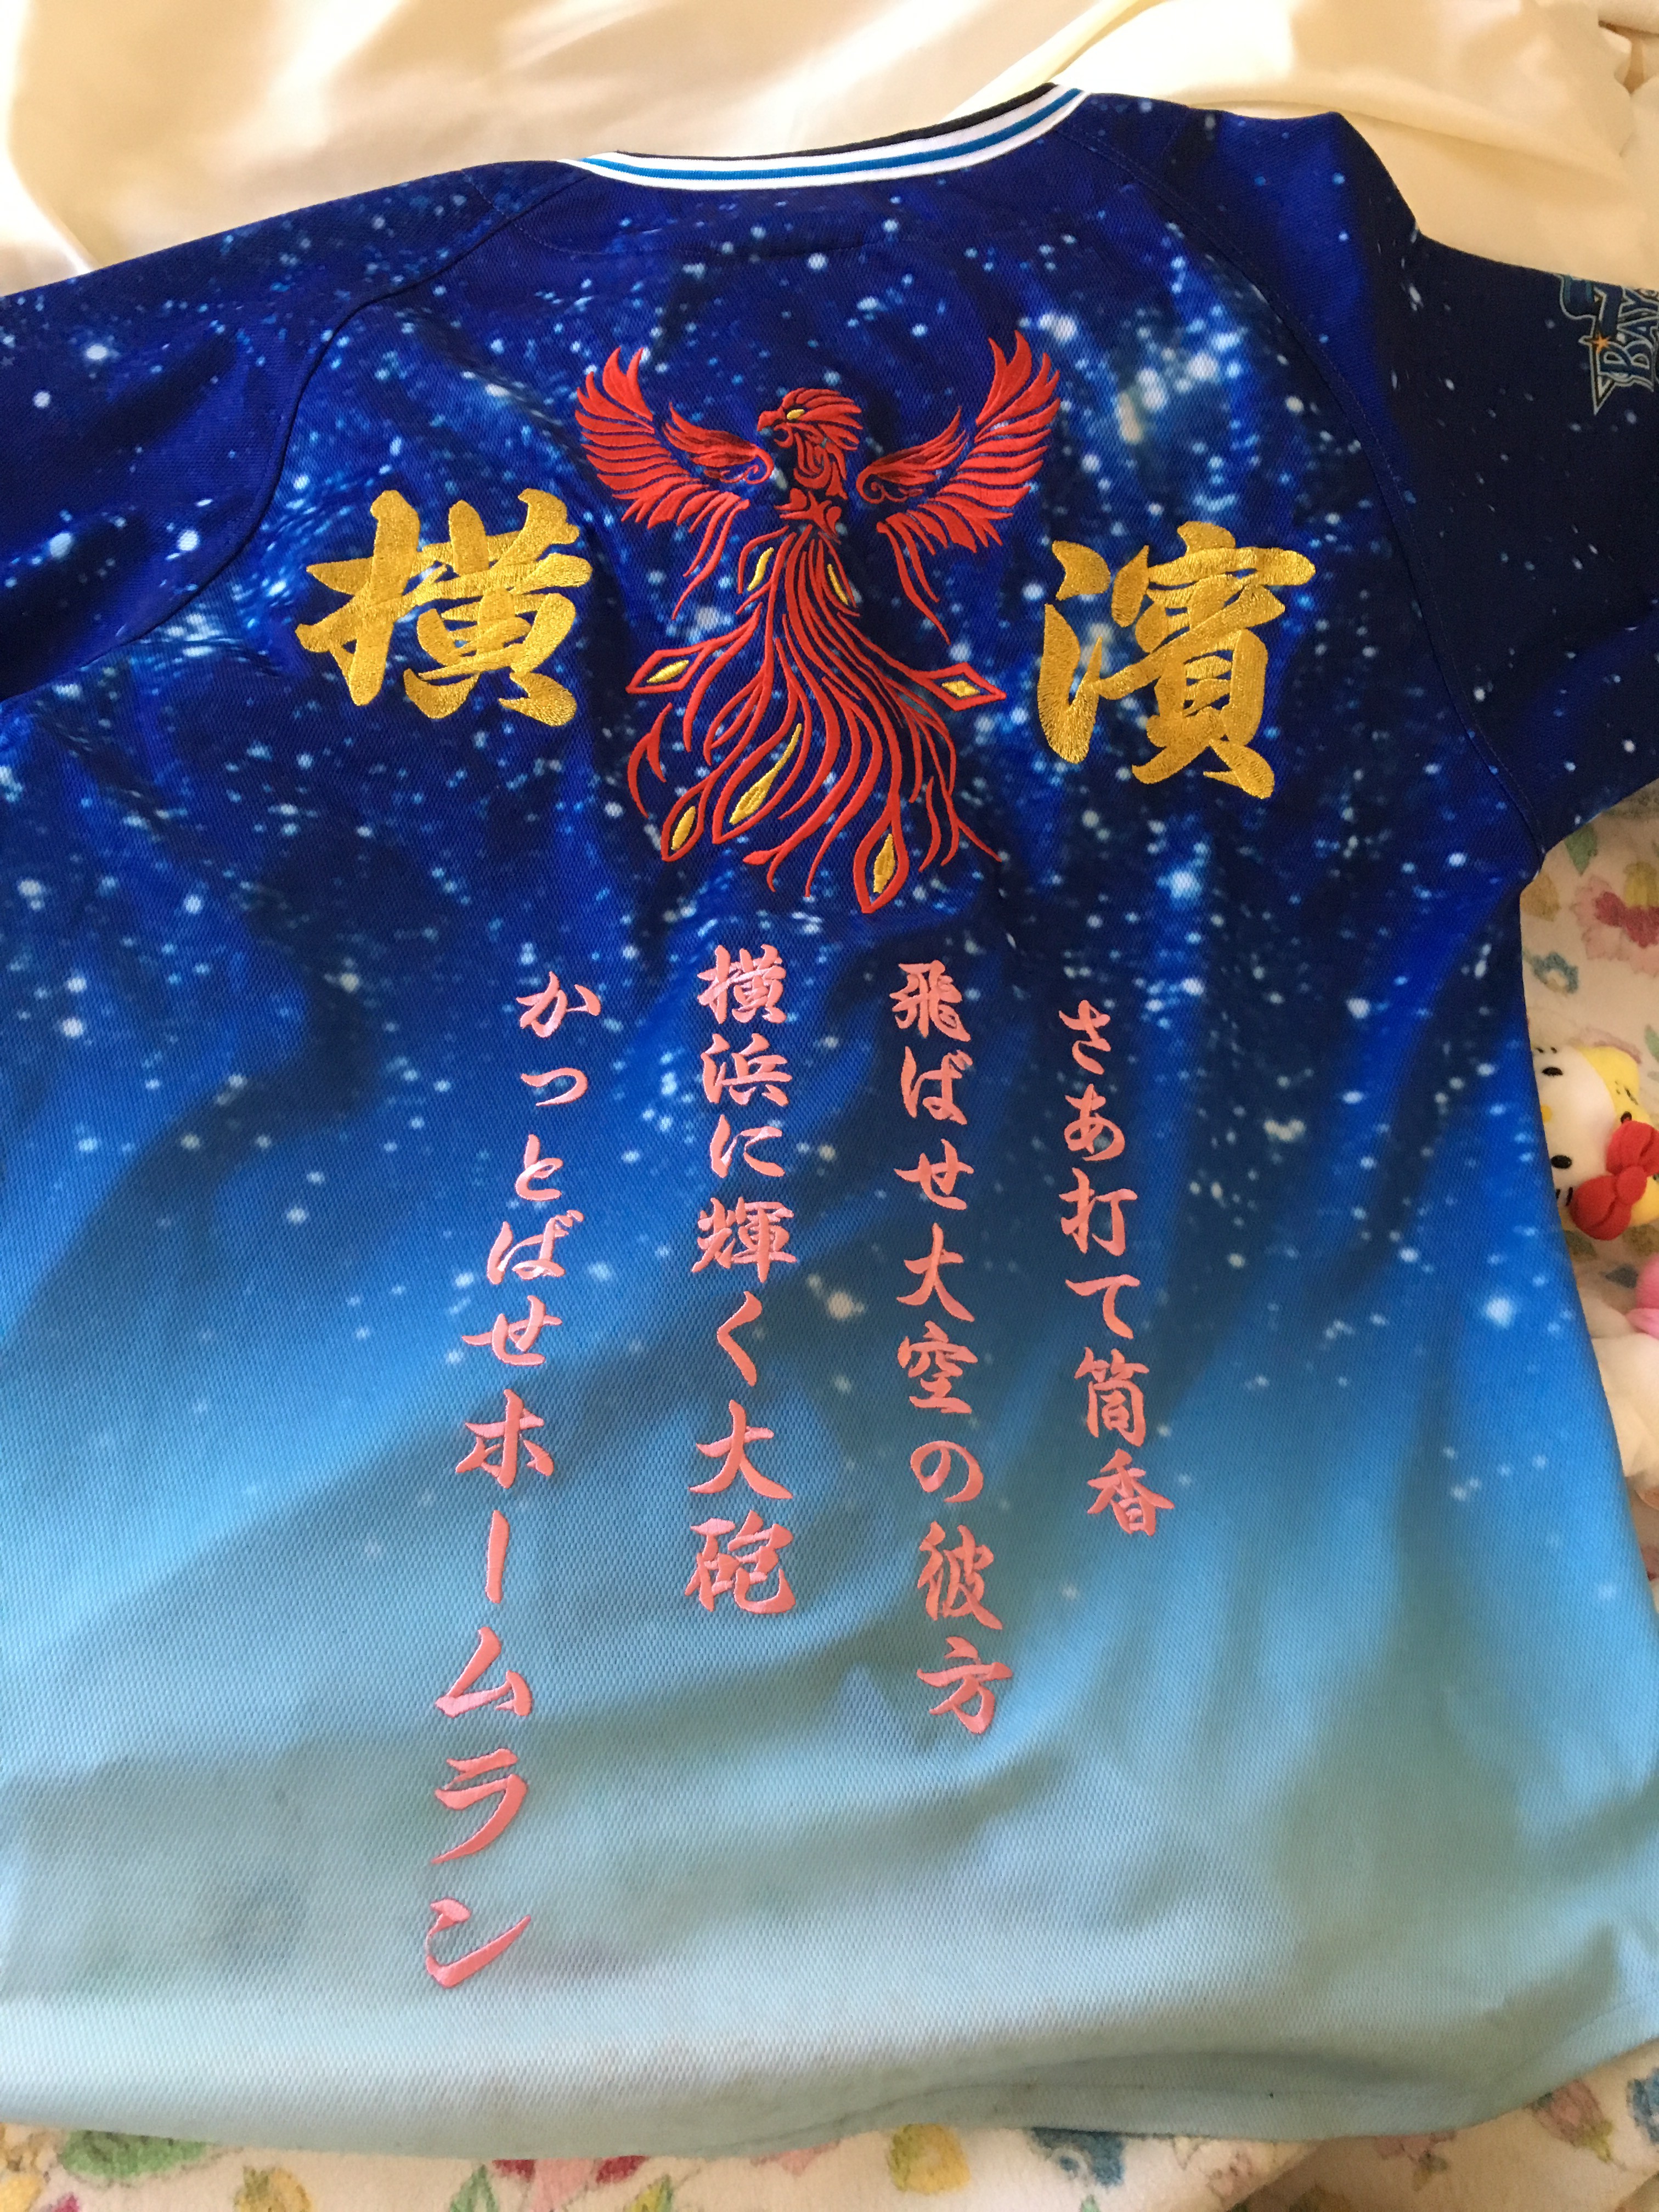 横浜DeNAベイスターズ2013年、スターナイトユニフォームに筒香選手の応援歌刺繍。 – 横浜DeNAベイスターズ – 刺繍専門店 真野ししゅう